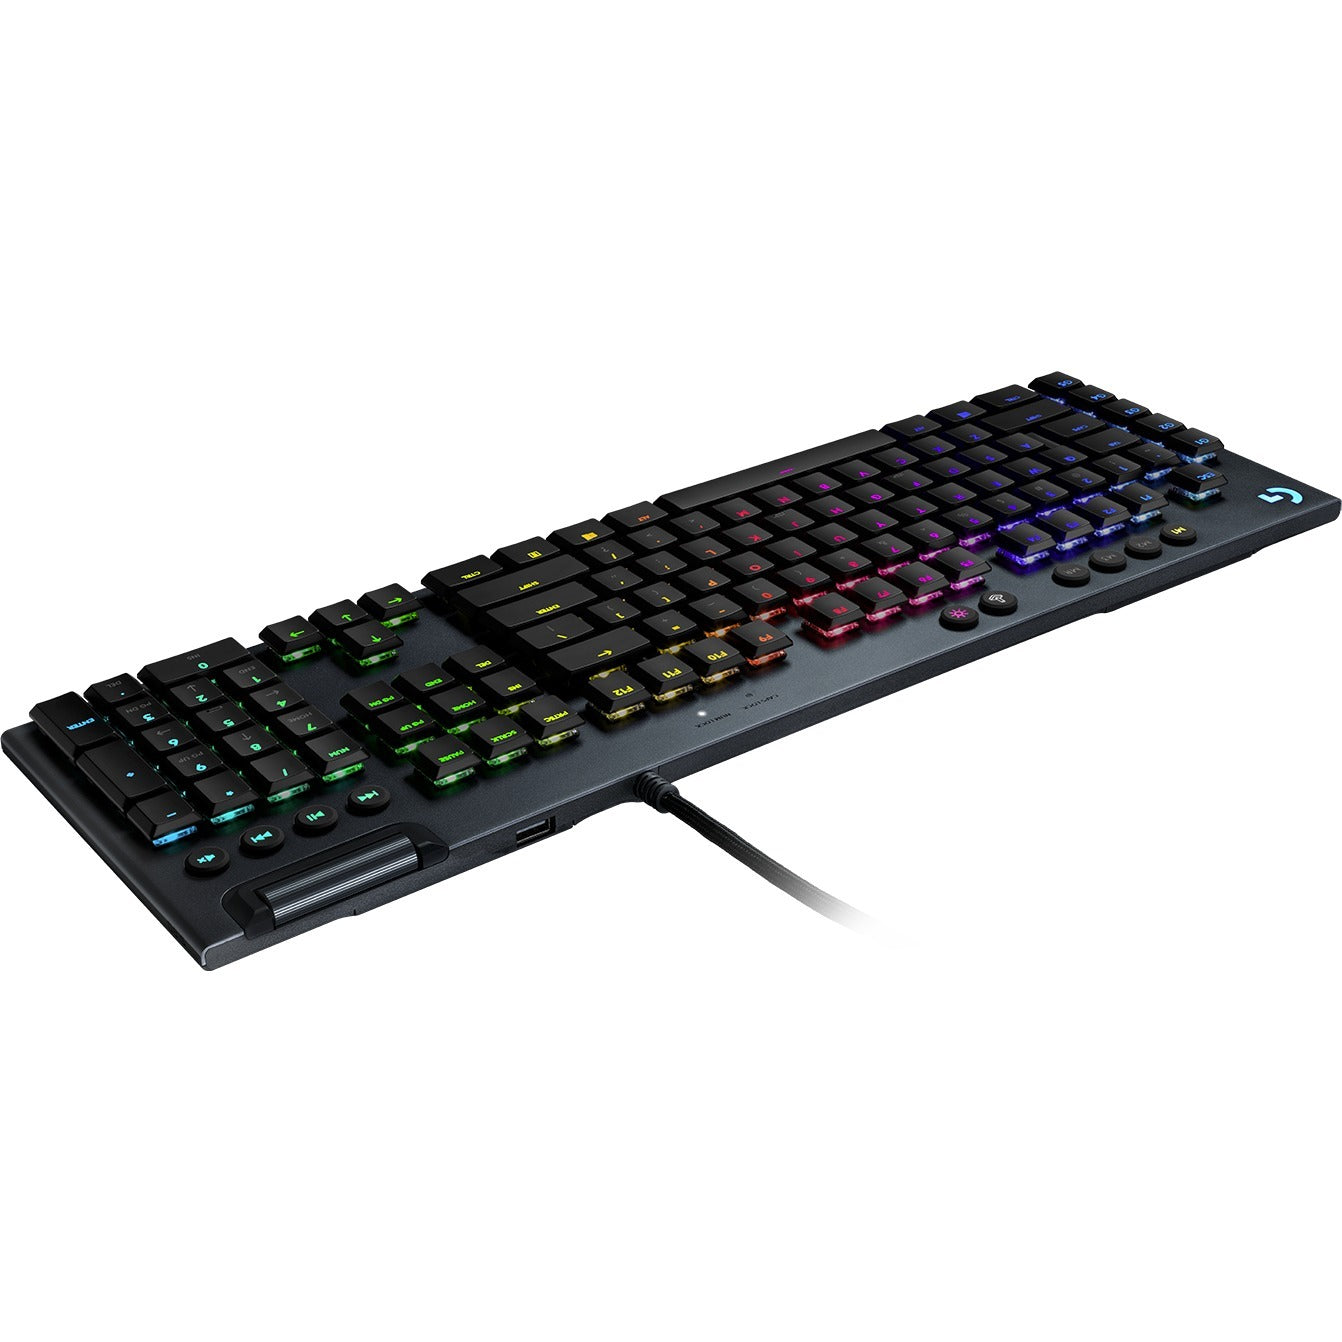 G815 Lightsync RGB Mechanical Gaming Keyboard – Natix